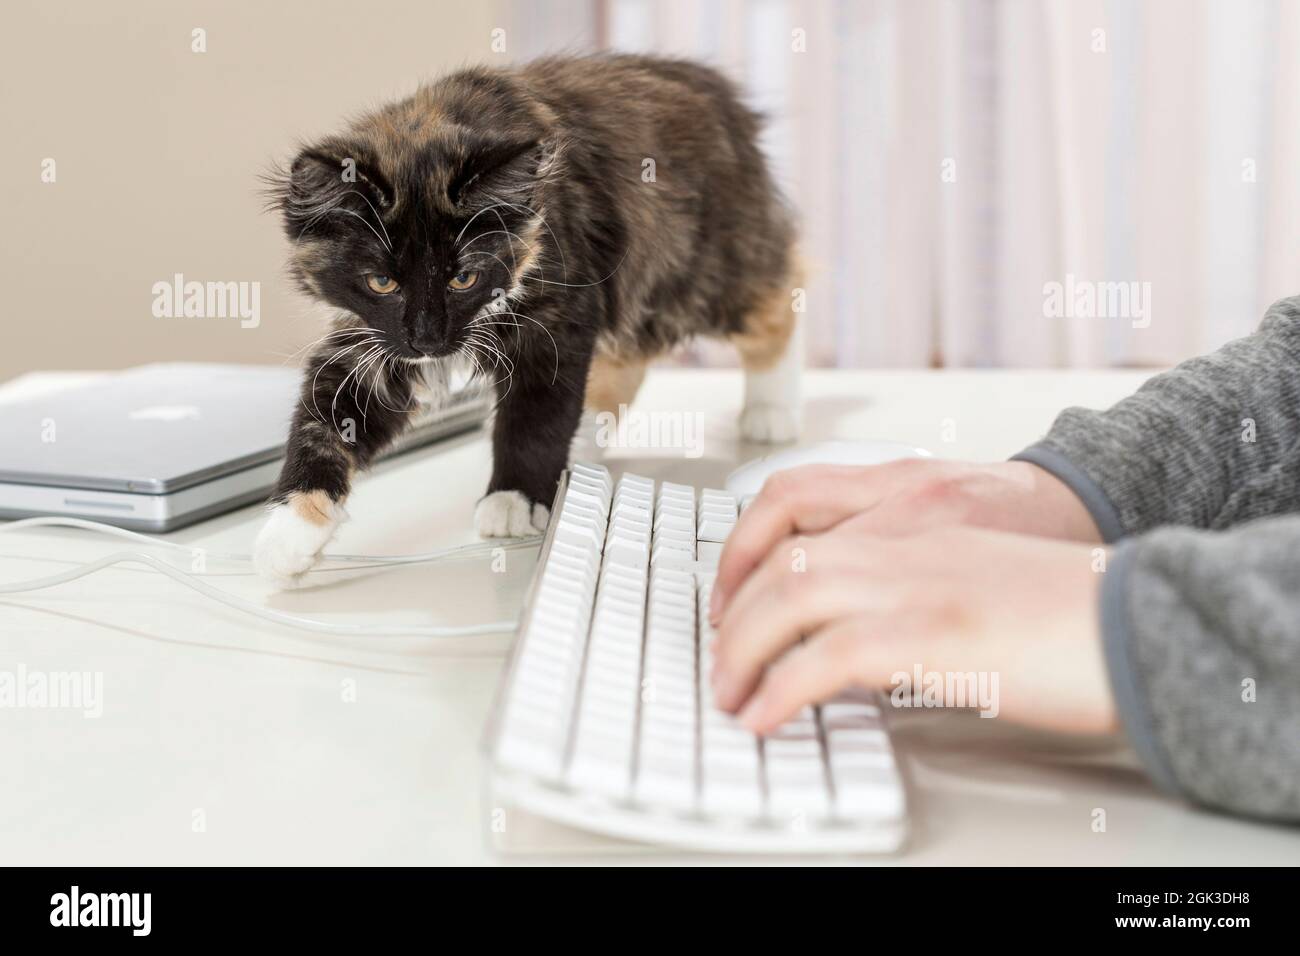 Forêt norvégienne Cat Un chaton regarde le clavier d'un ordinateur. Allemagne Banque D'Images